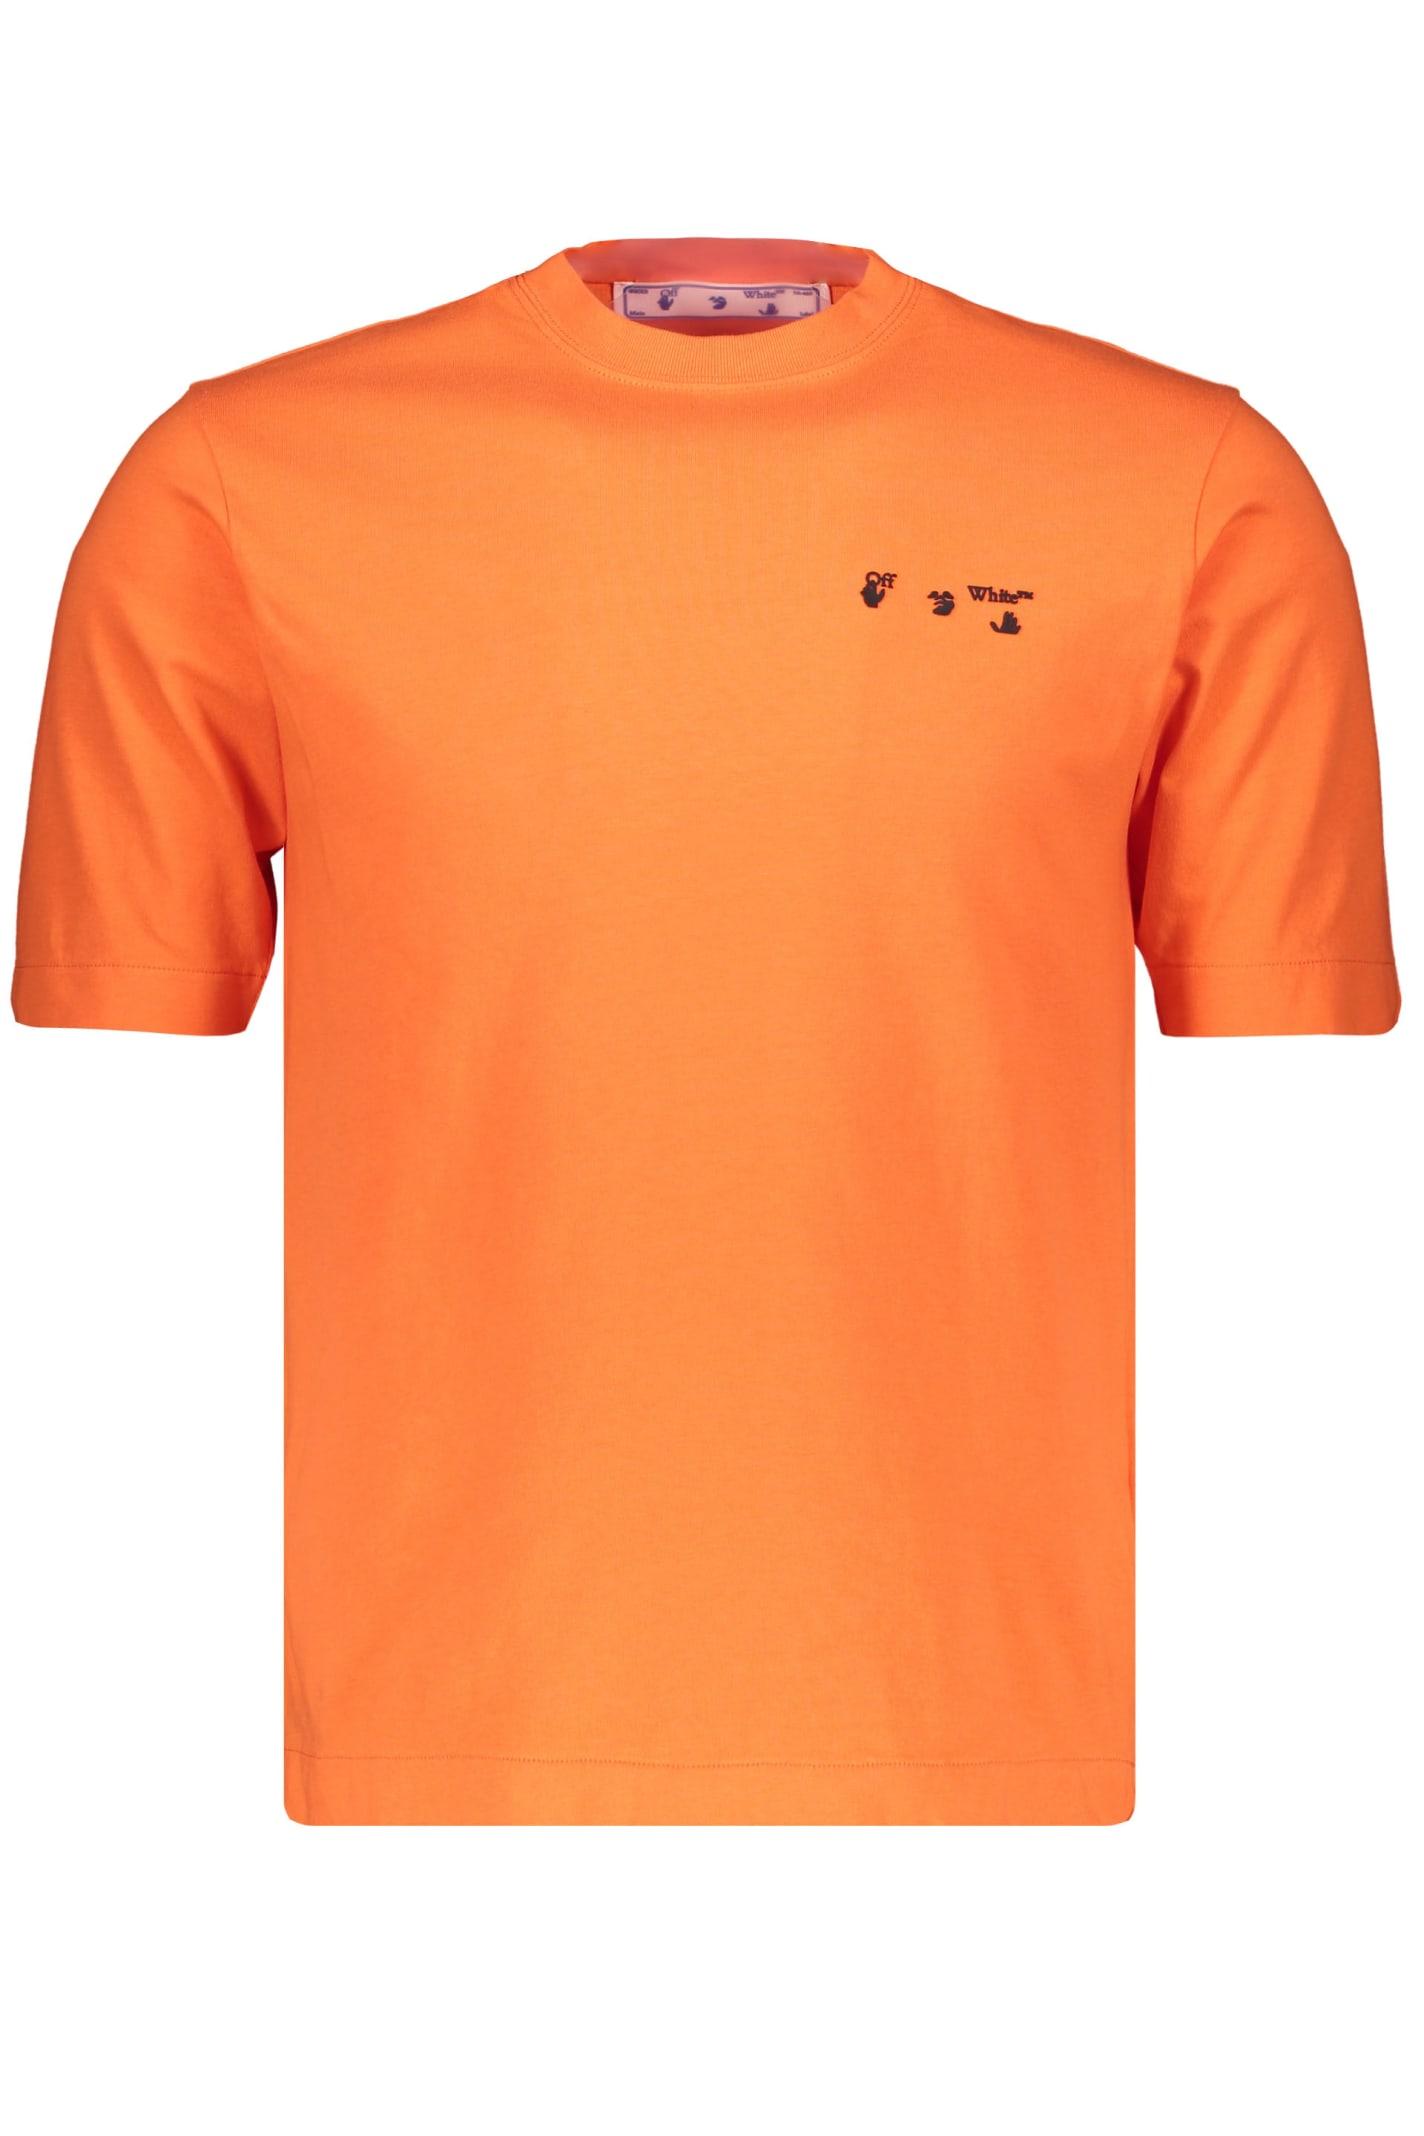 Off-White c/o Virgil Abloh Logo Cotton T-shirt in Orange for Men